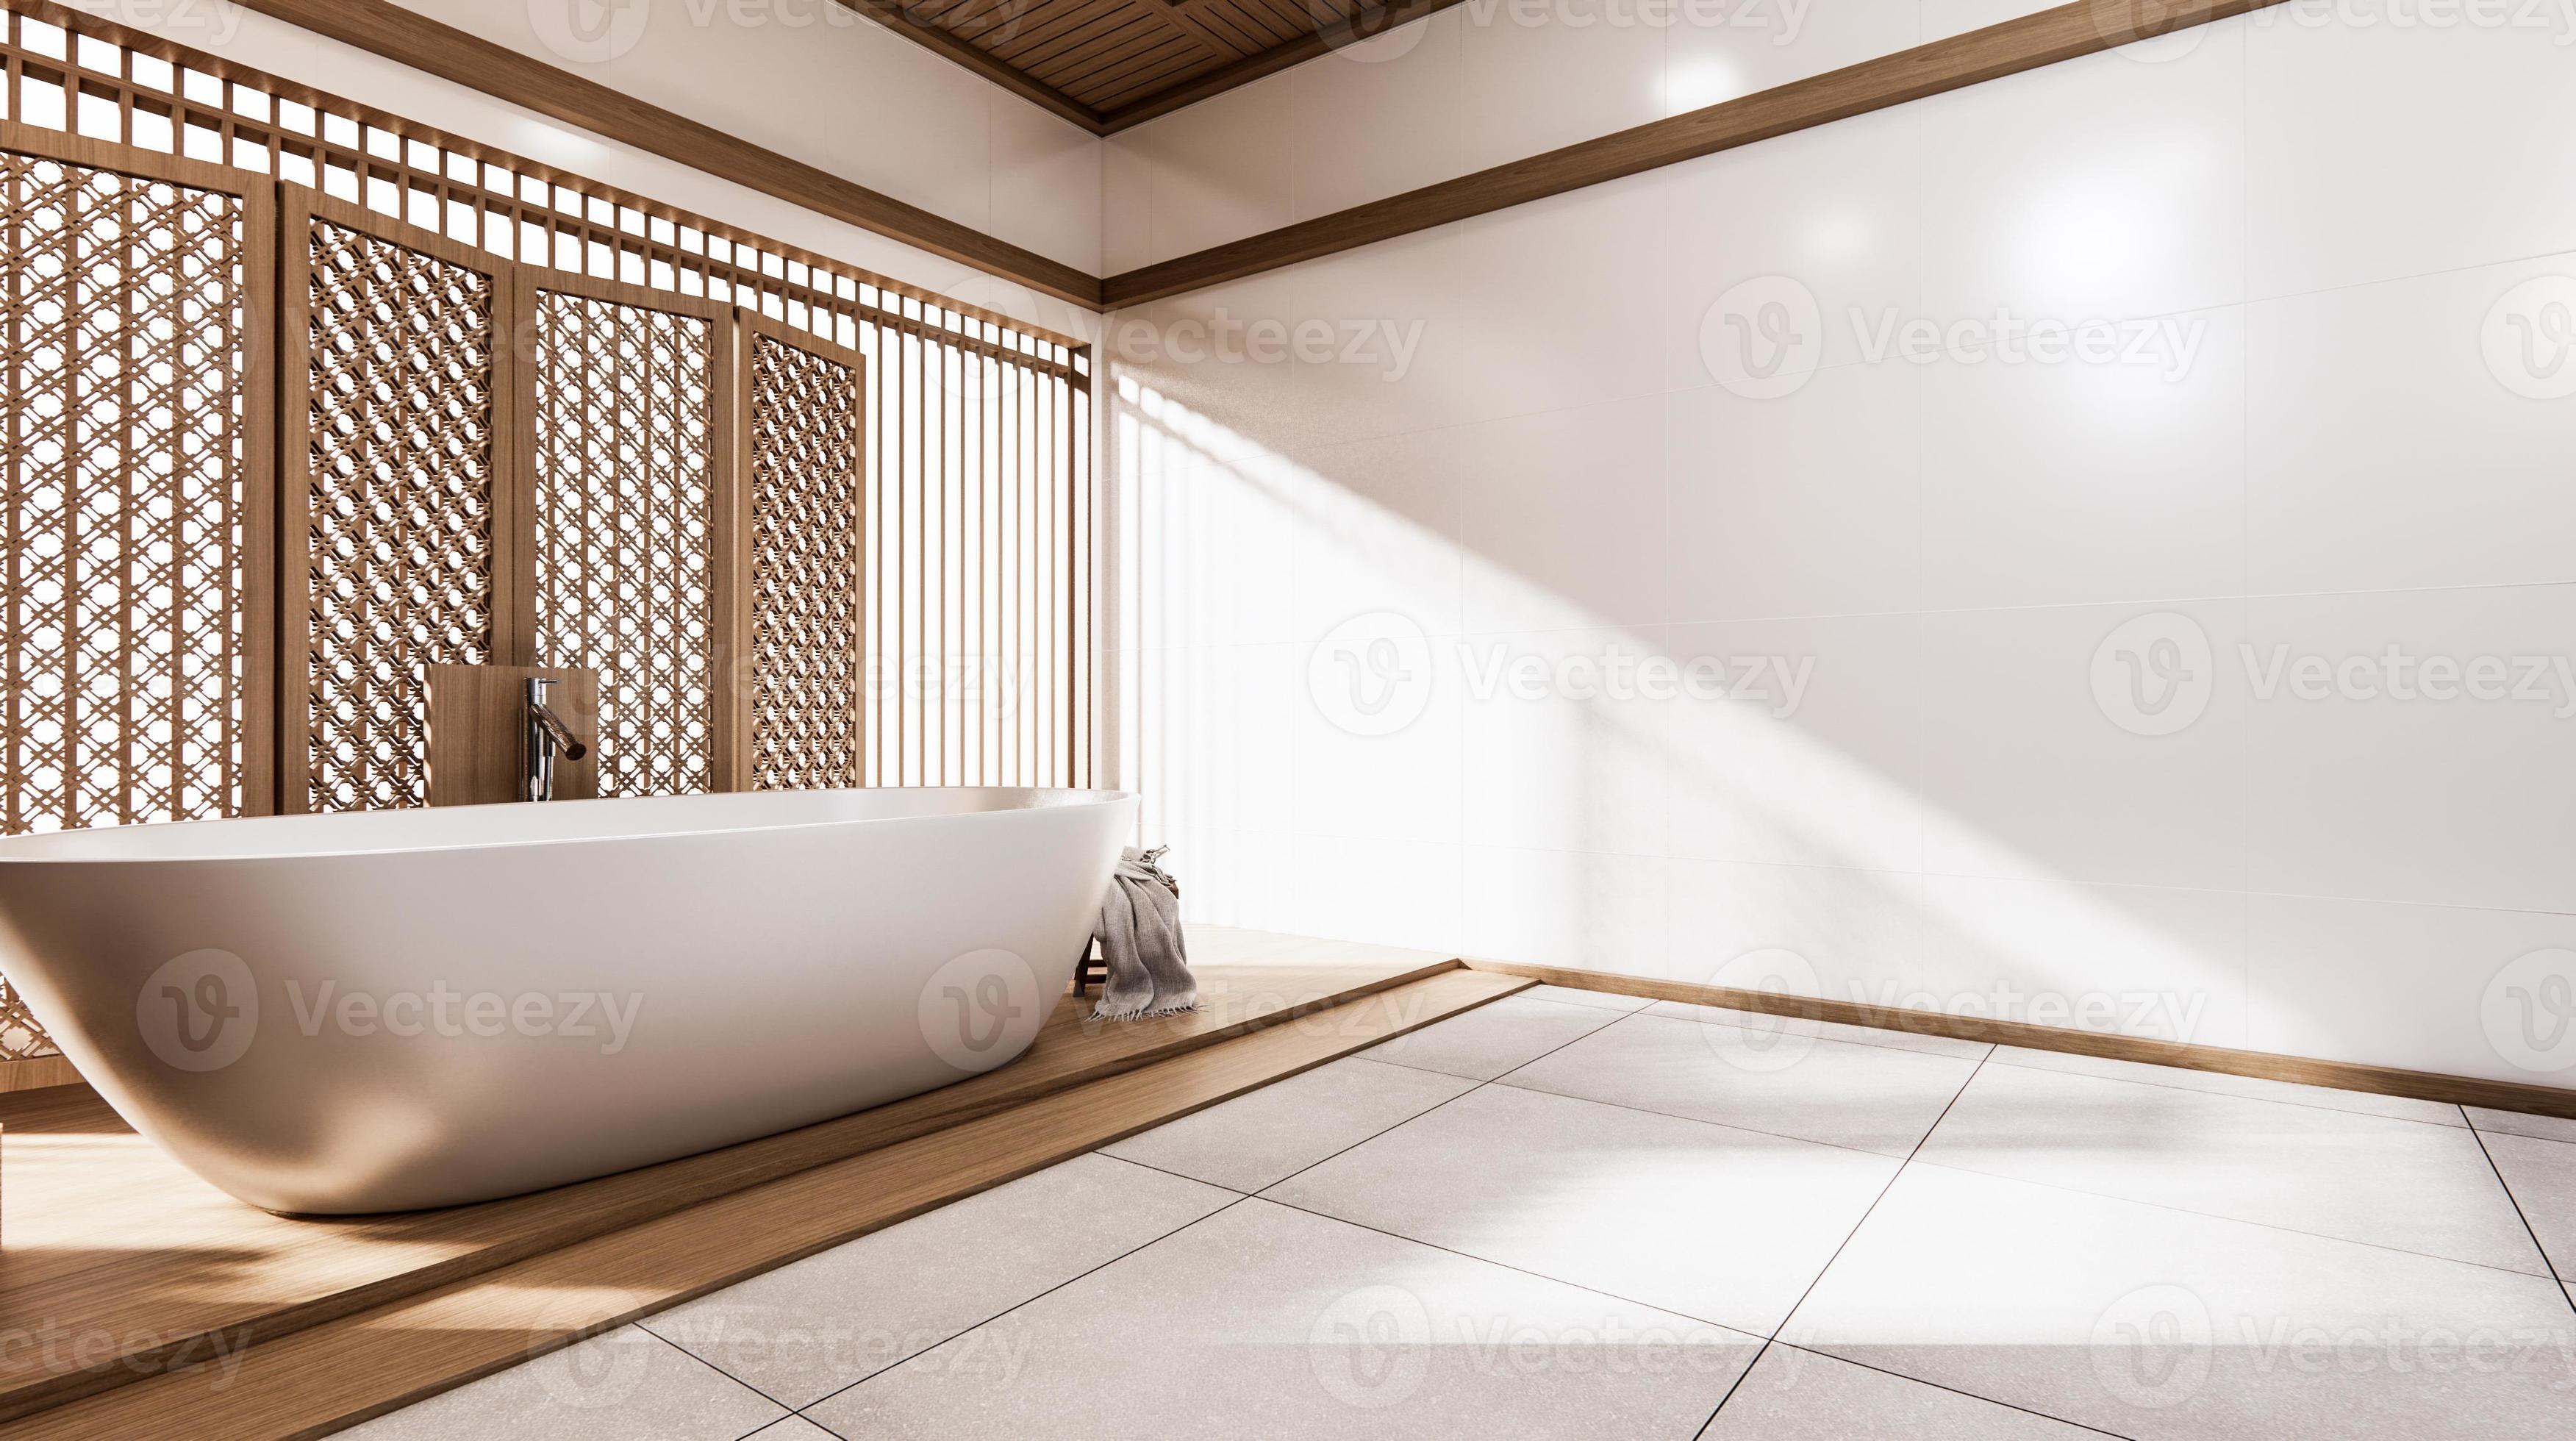 el bañera y baño en baño japonés wabi sabi estilo 31148210 Foto de stock en  Vecteezy